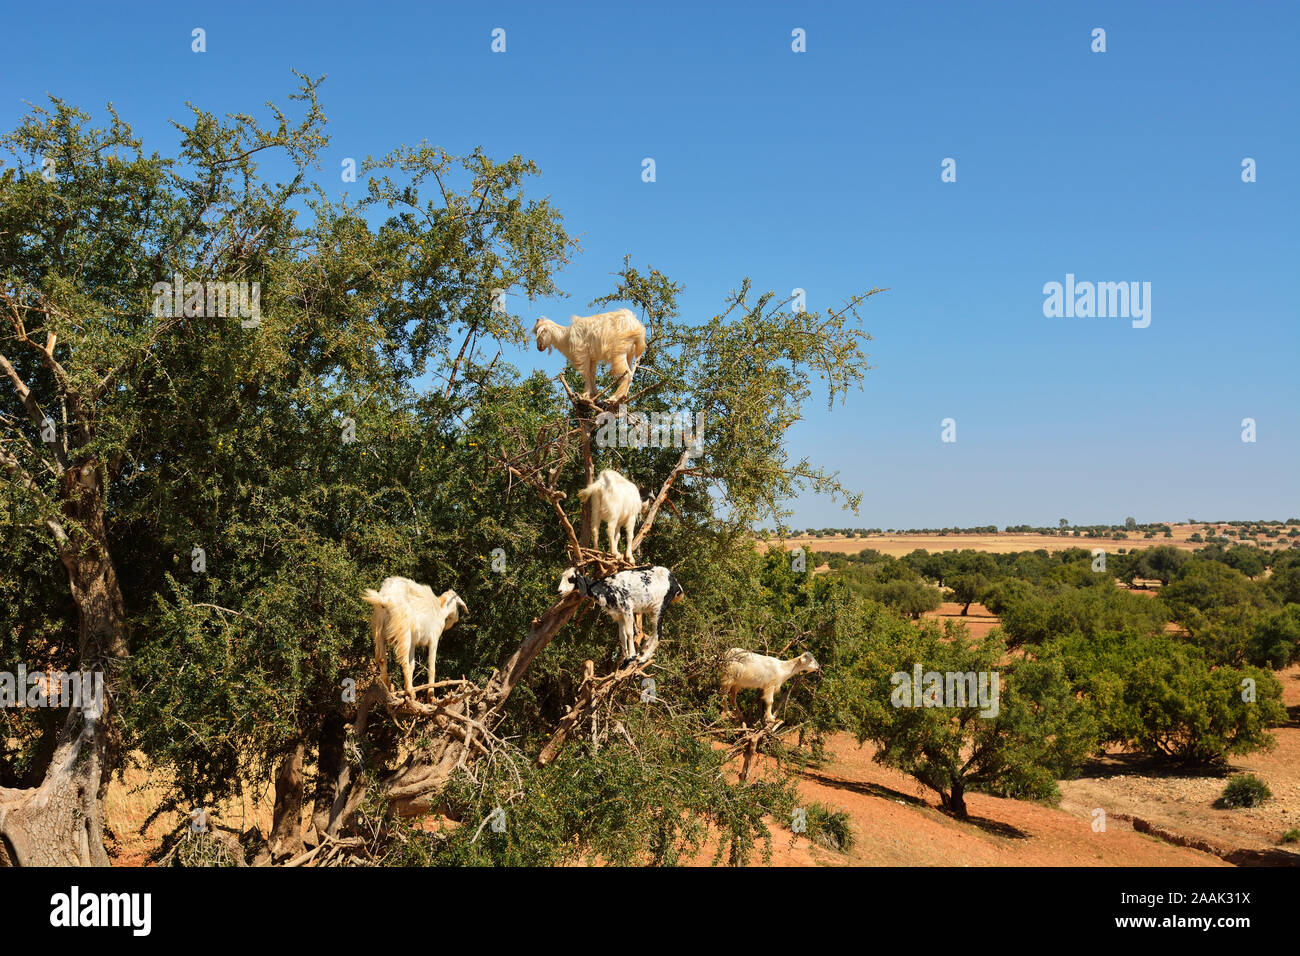 Cabras en un árbol de argán. El aceite de argán se ha convertido en un producto de moda en Europa y Norteamérica. Essaoiura, Marruecos Foto de stock